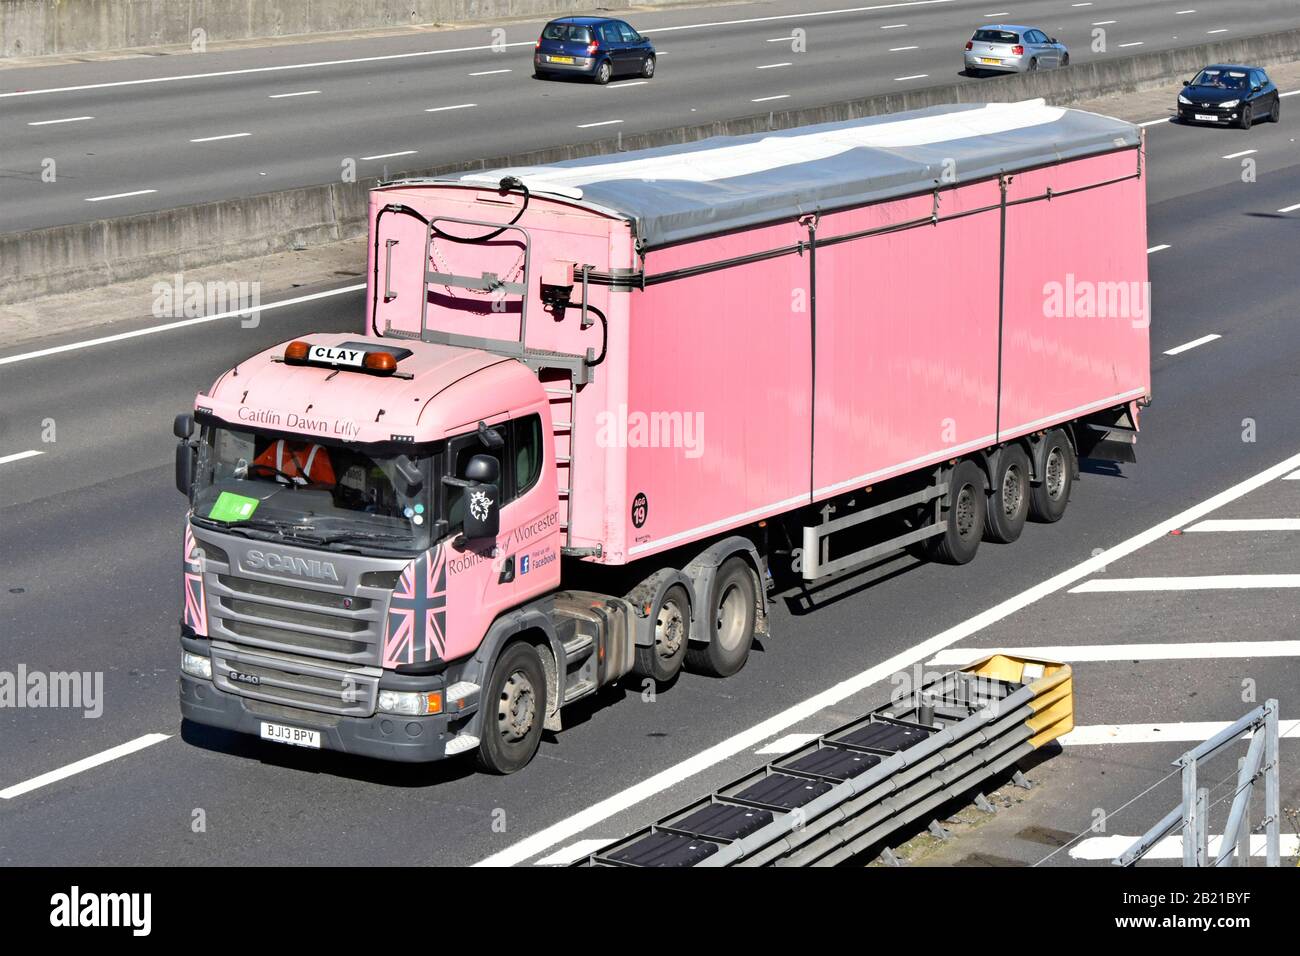 Mirando hacia abajo en el lado y frente del camión rosa hgv Scania camión con conductor y remolque articulado por Robinsons de Worcester un negocio de transporte por carretera en el Reino Unido Foto de stock